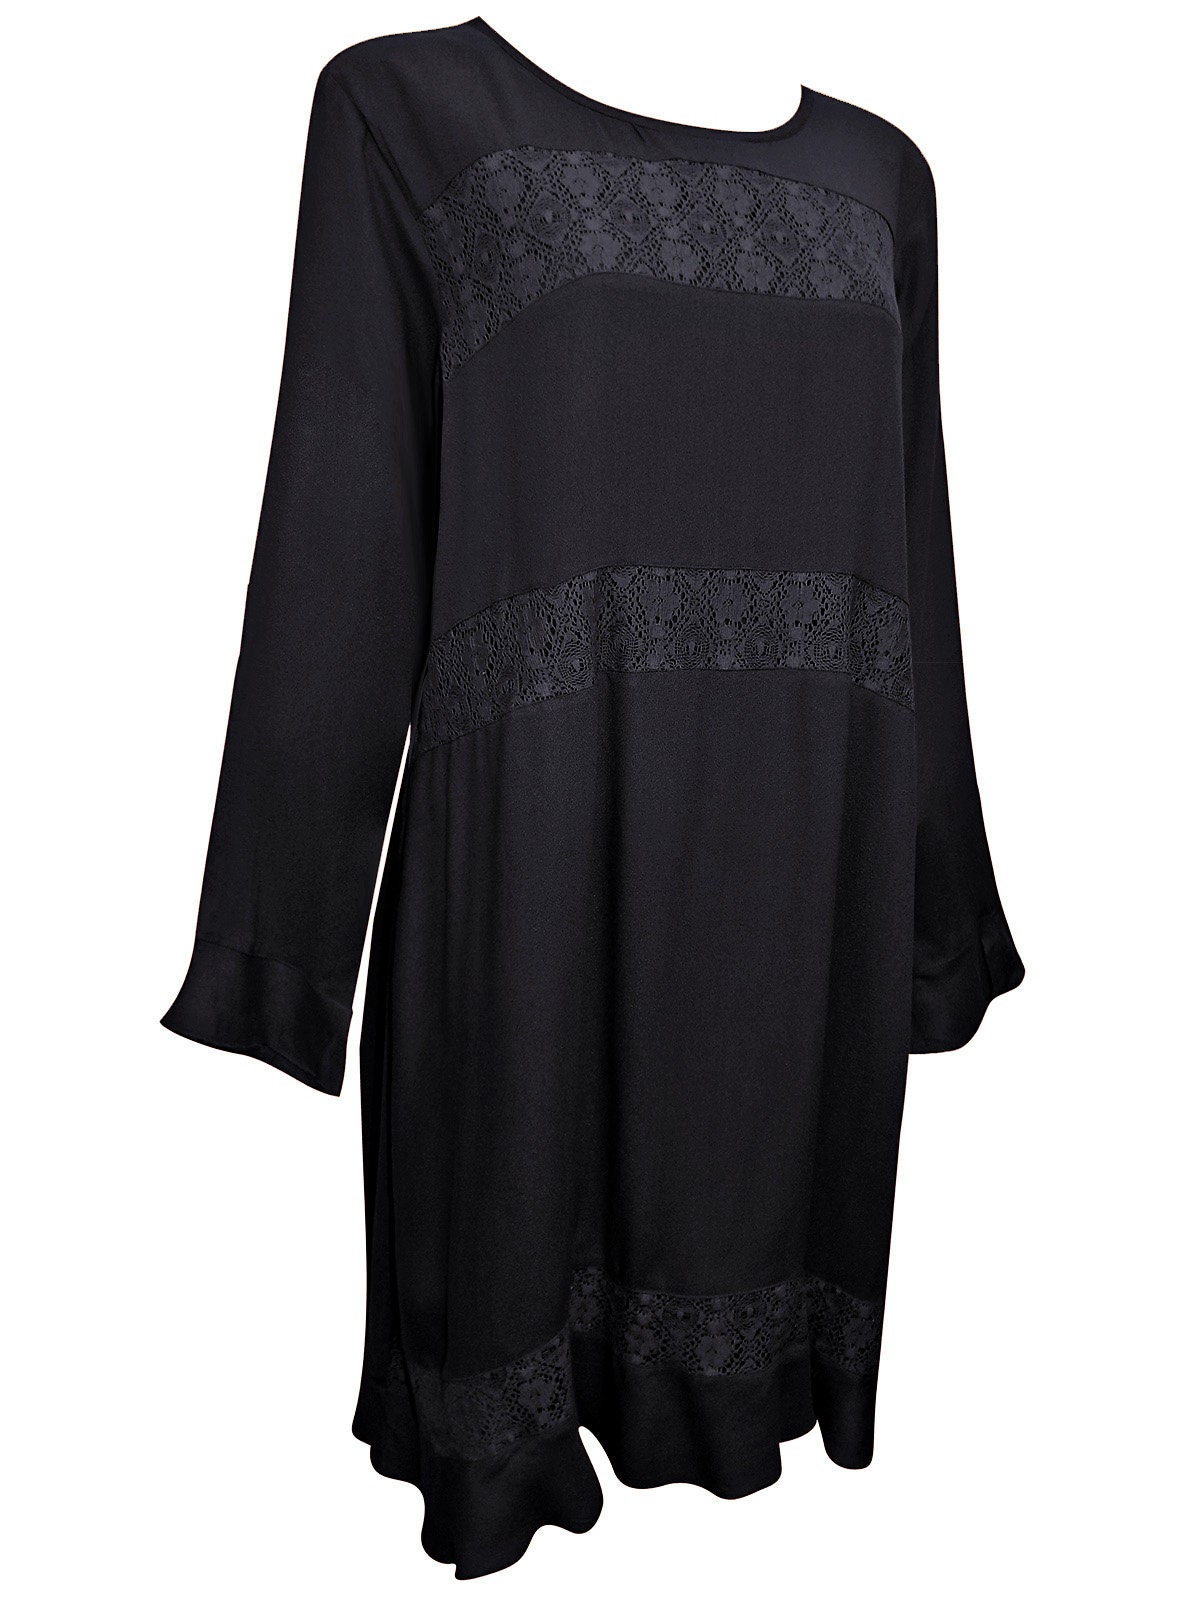 Plus Size Black Boho Gothic Short Dress/long Top True to Size - Etsy UK